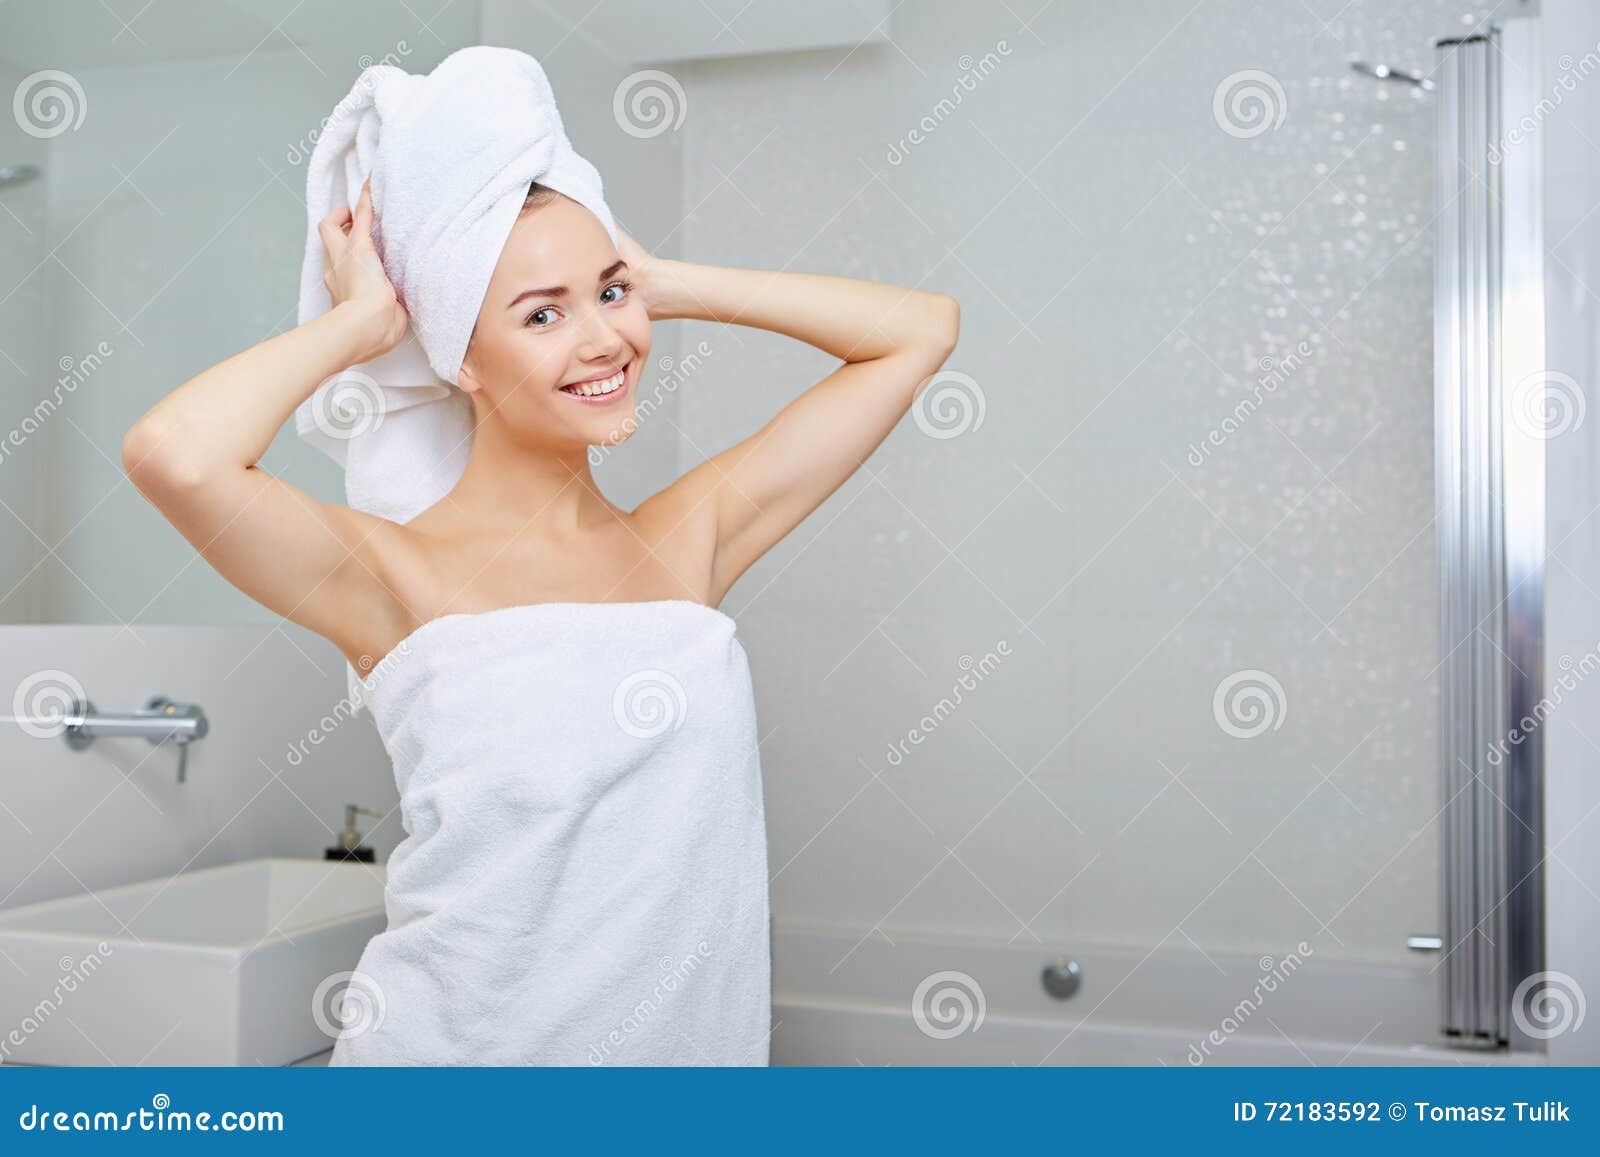 Работа в полотенце. Девушка в белом полотенце. Красивая девушка в полотенце. Девушка в Банном полотенце. Девушка с полотенцем на голове.